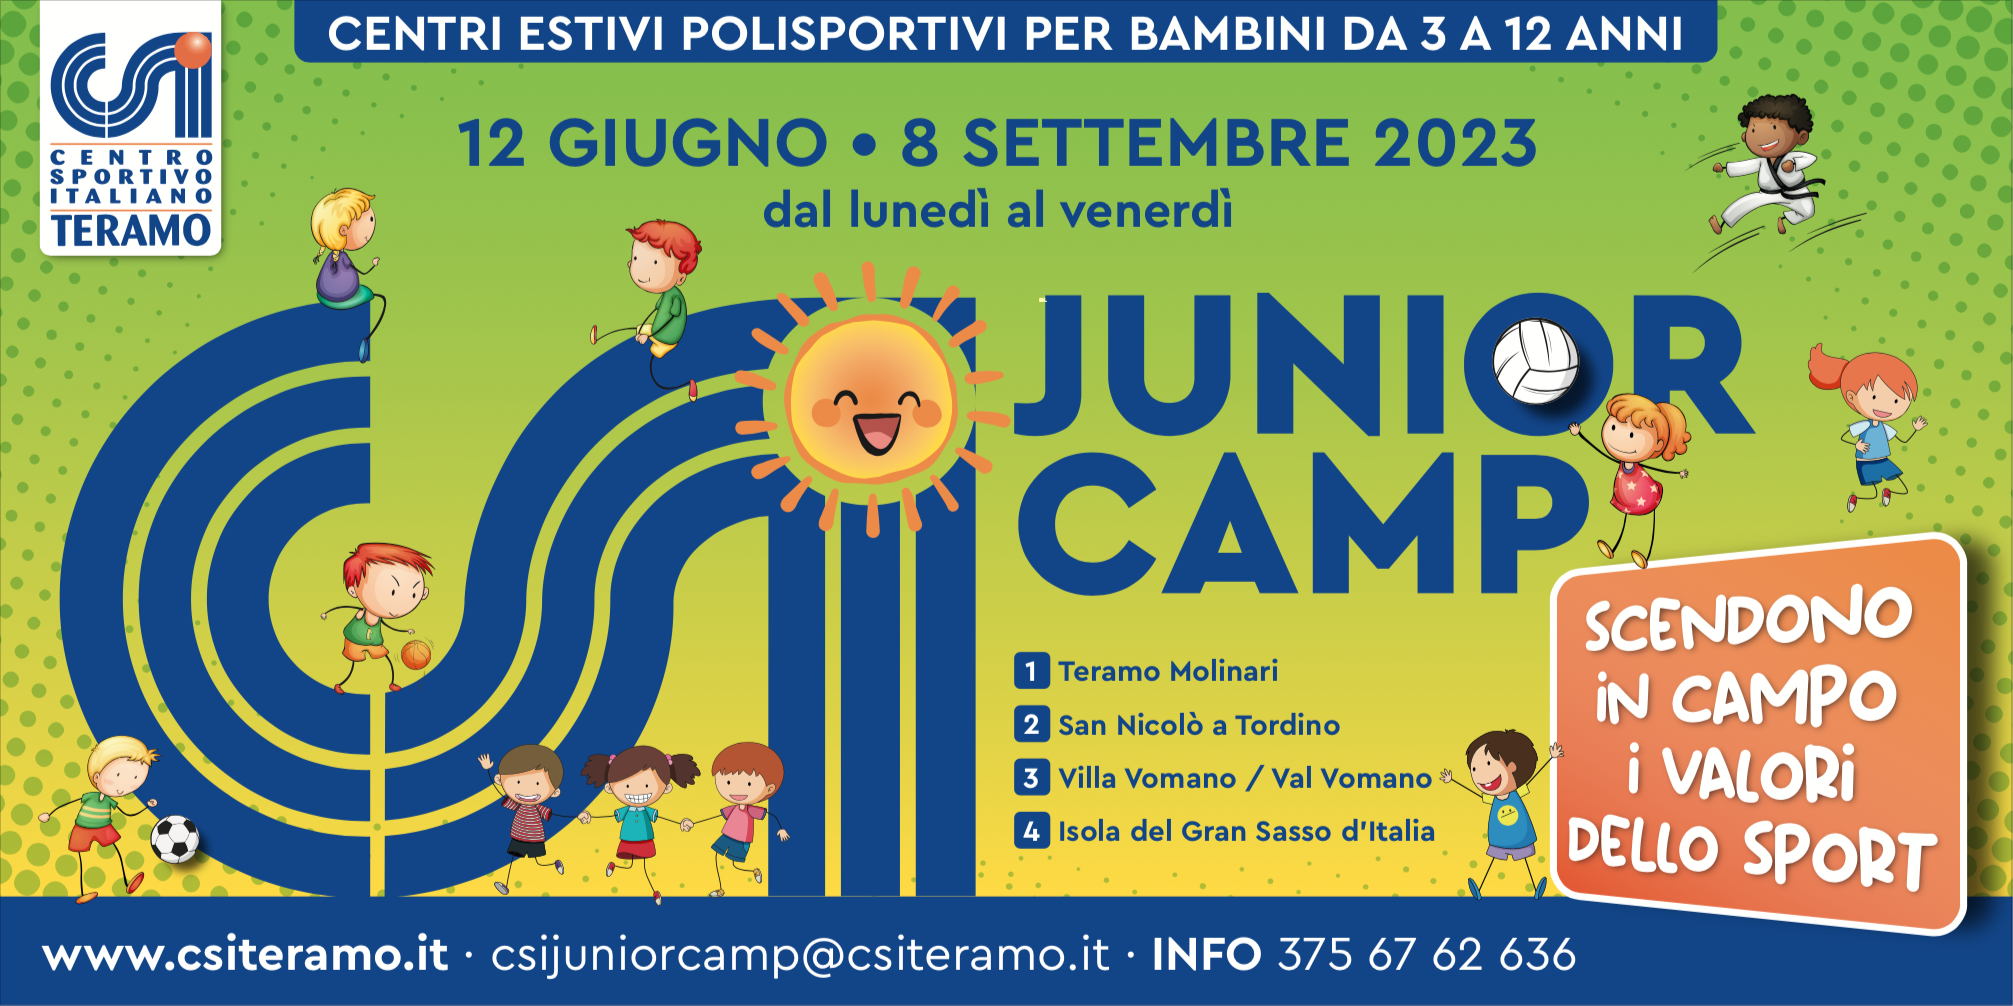 CSI Junior Camp: un'estate di divertimento è alle porte!